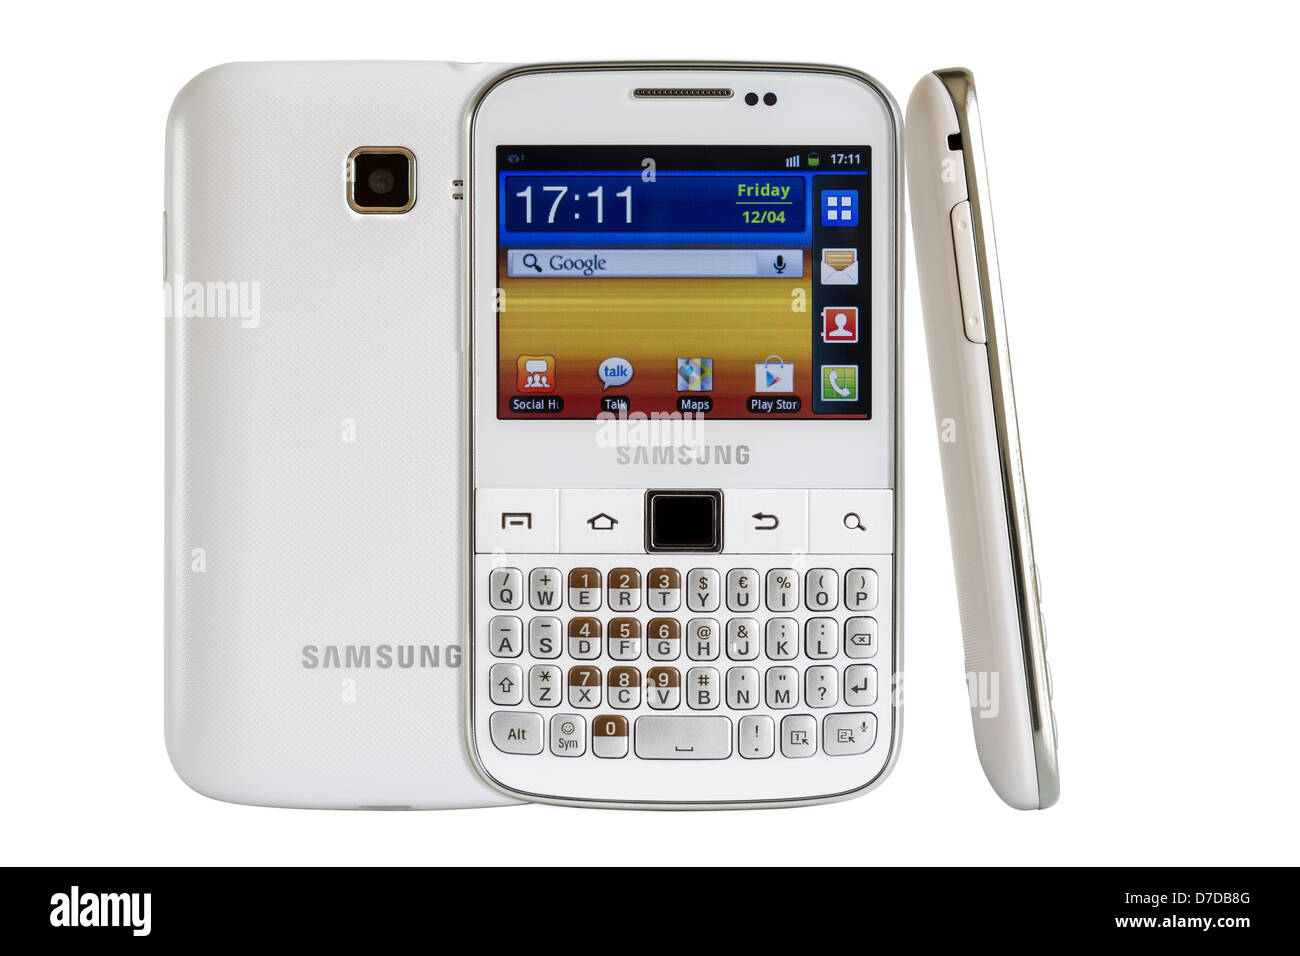 Samsung Galaxy Y Pro B5510 è un Android smart phone con tastiera QWERTY completa candybar. Foto Stock